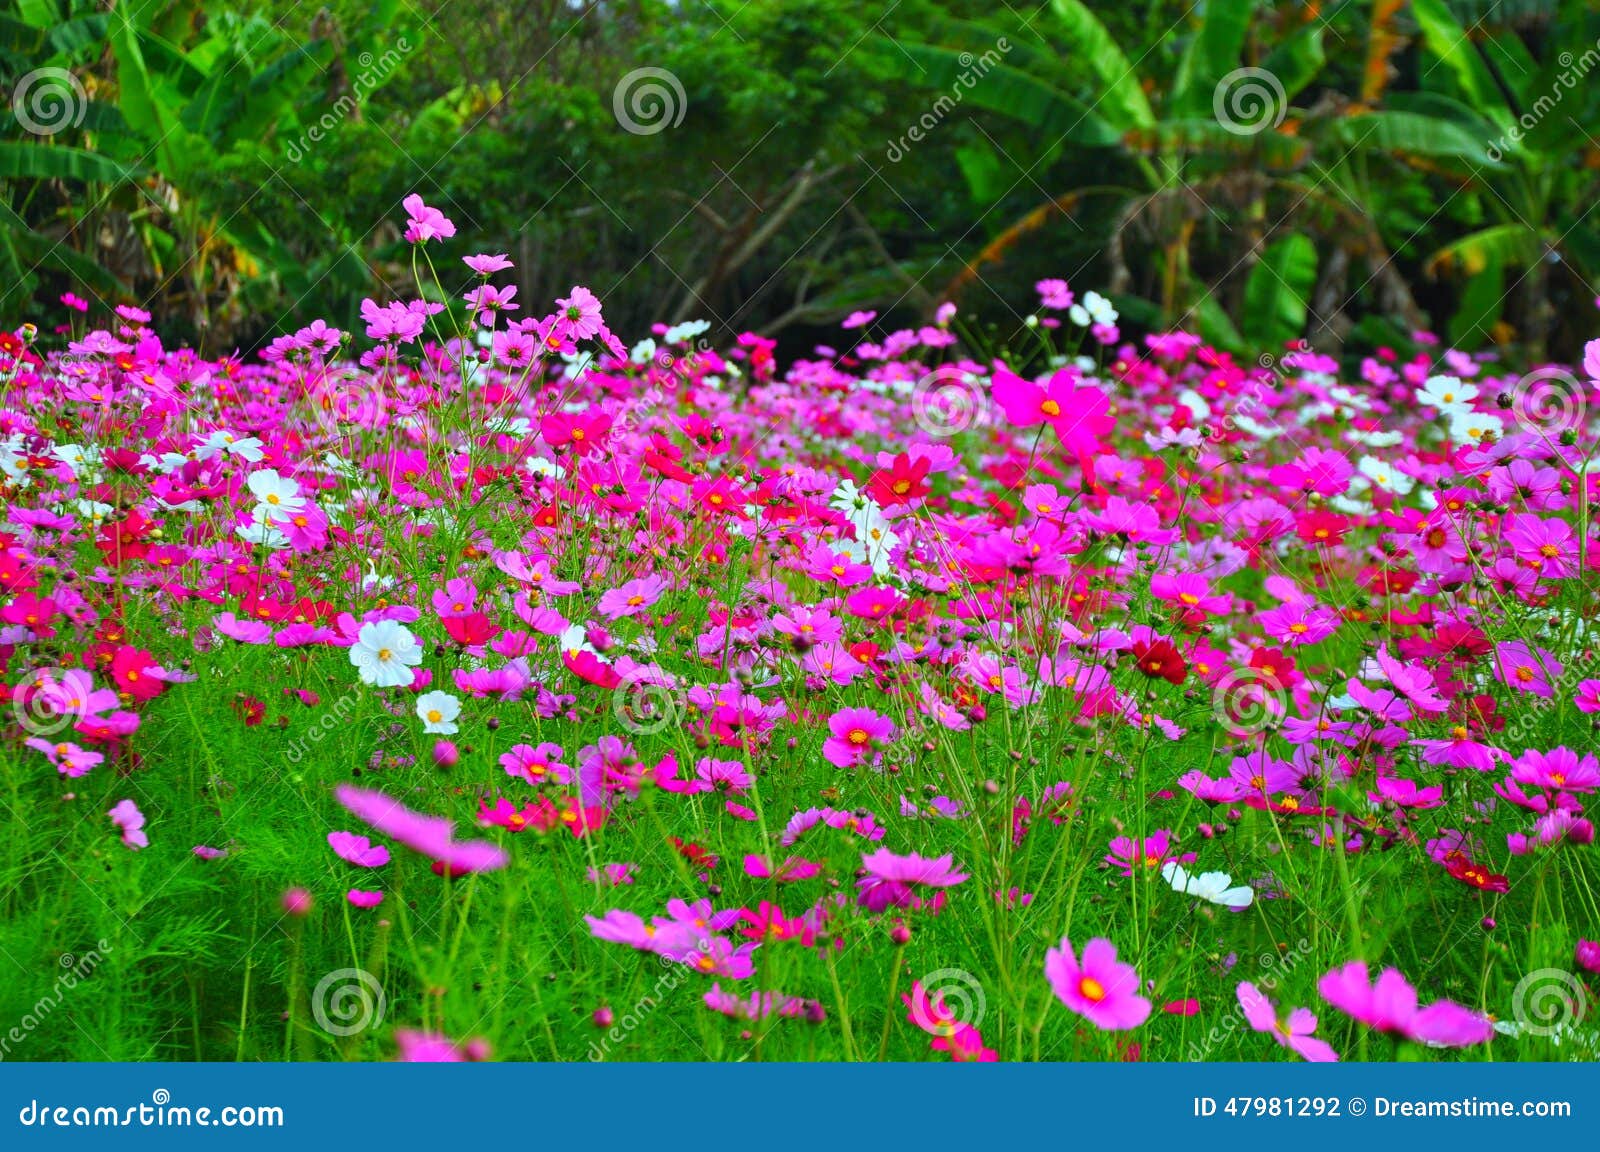 Beautiful Pink Flower Gardens